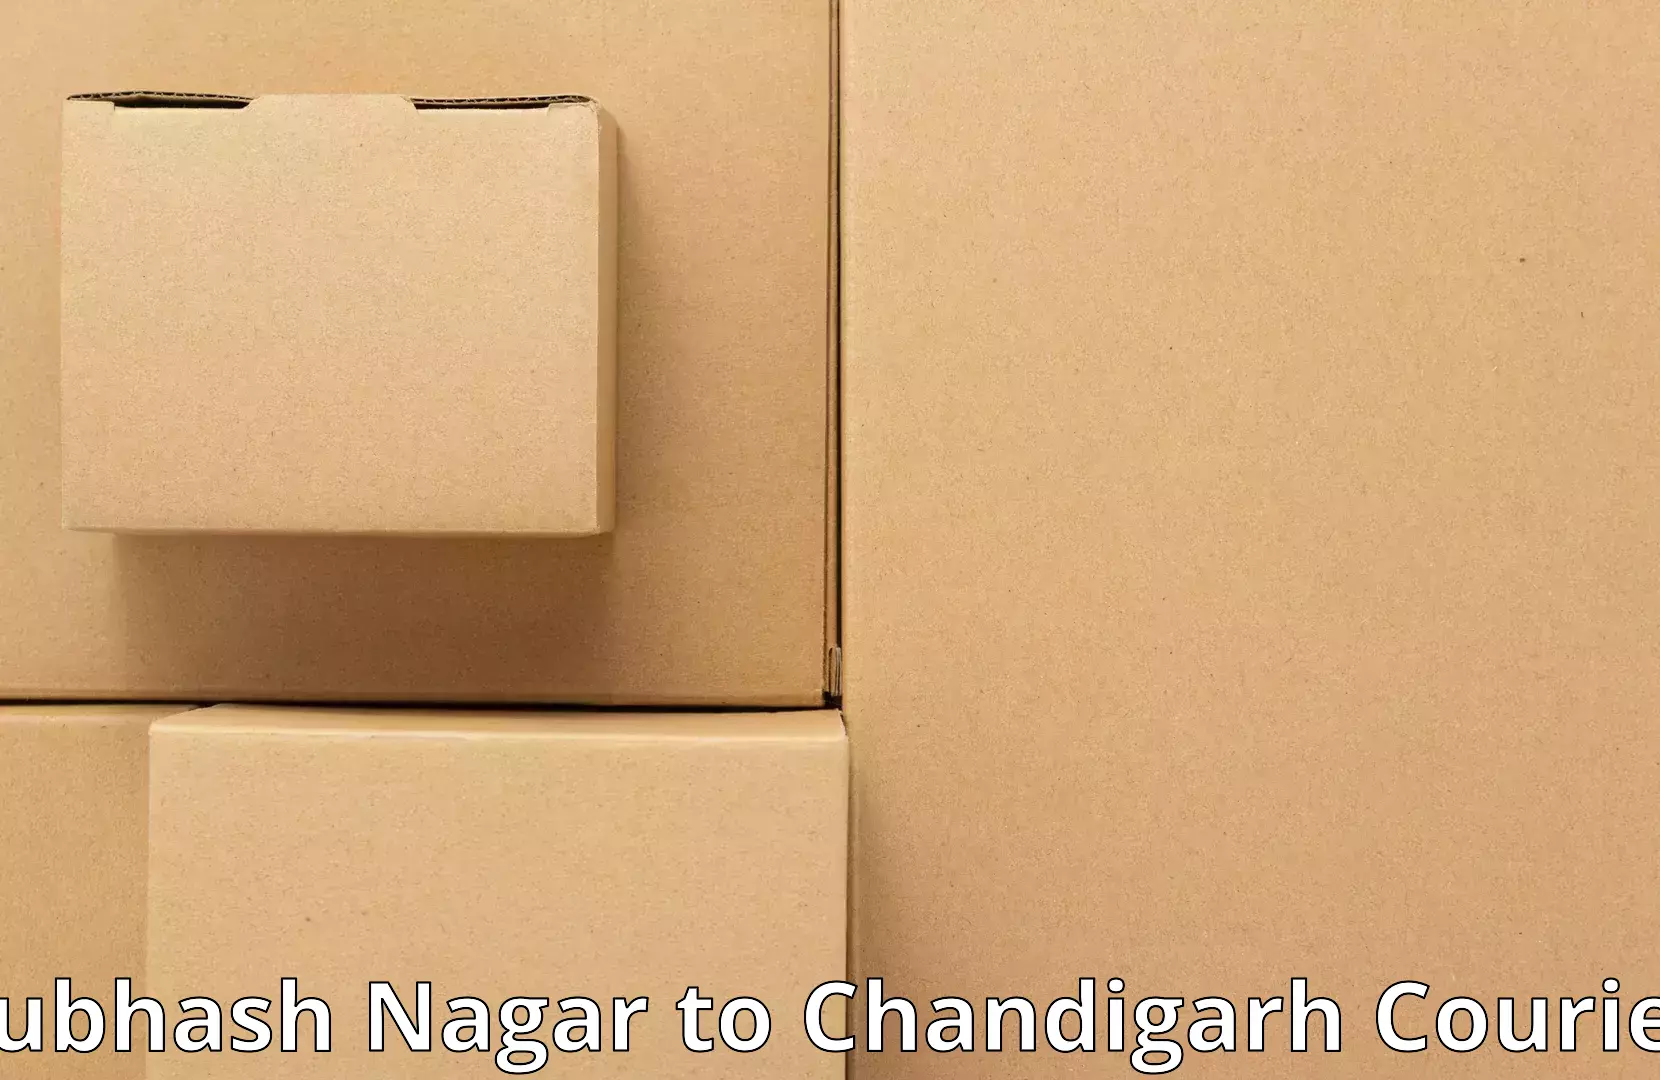 Furniture transport experts Subhash Nagar to Chandigarh